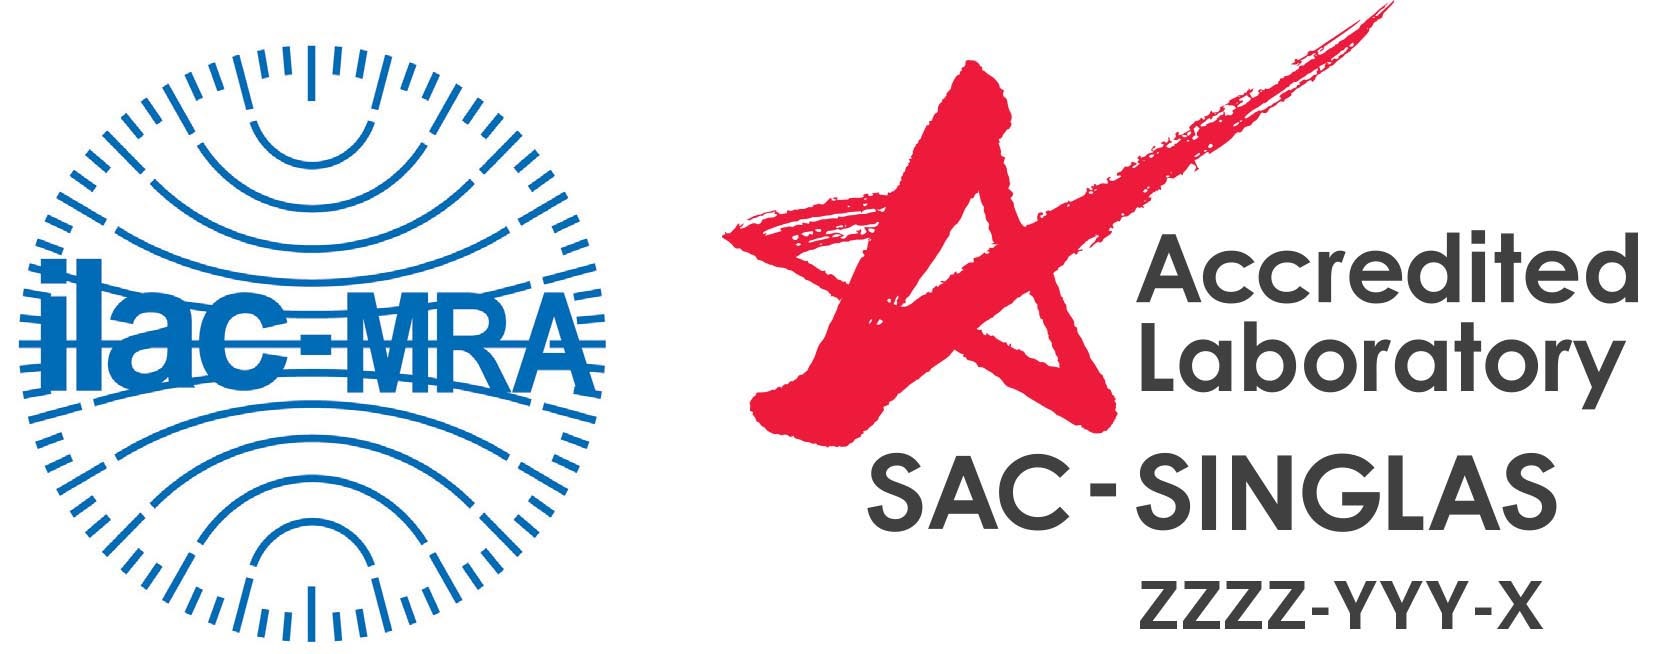 SAC Singlas with ILAC